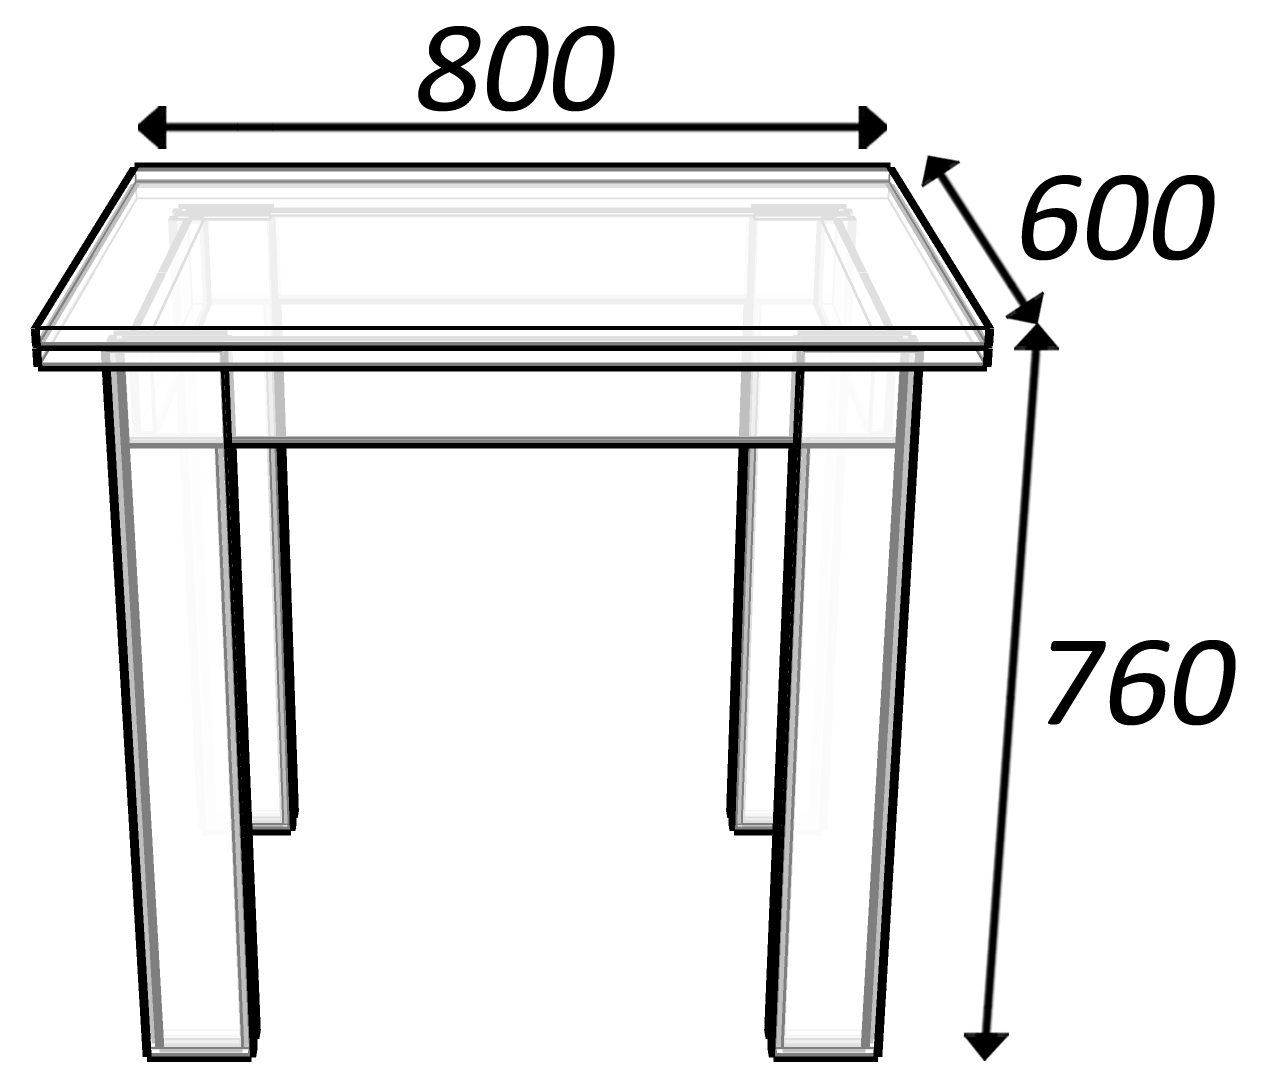 размер столешницы для обеденного стола